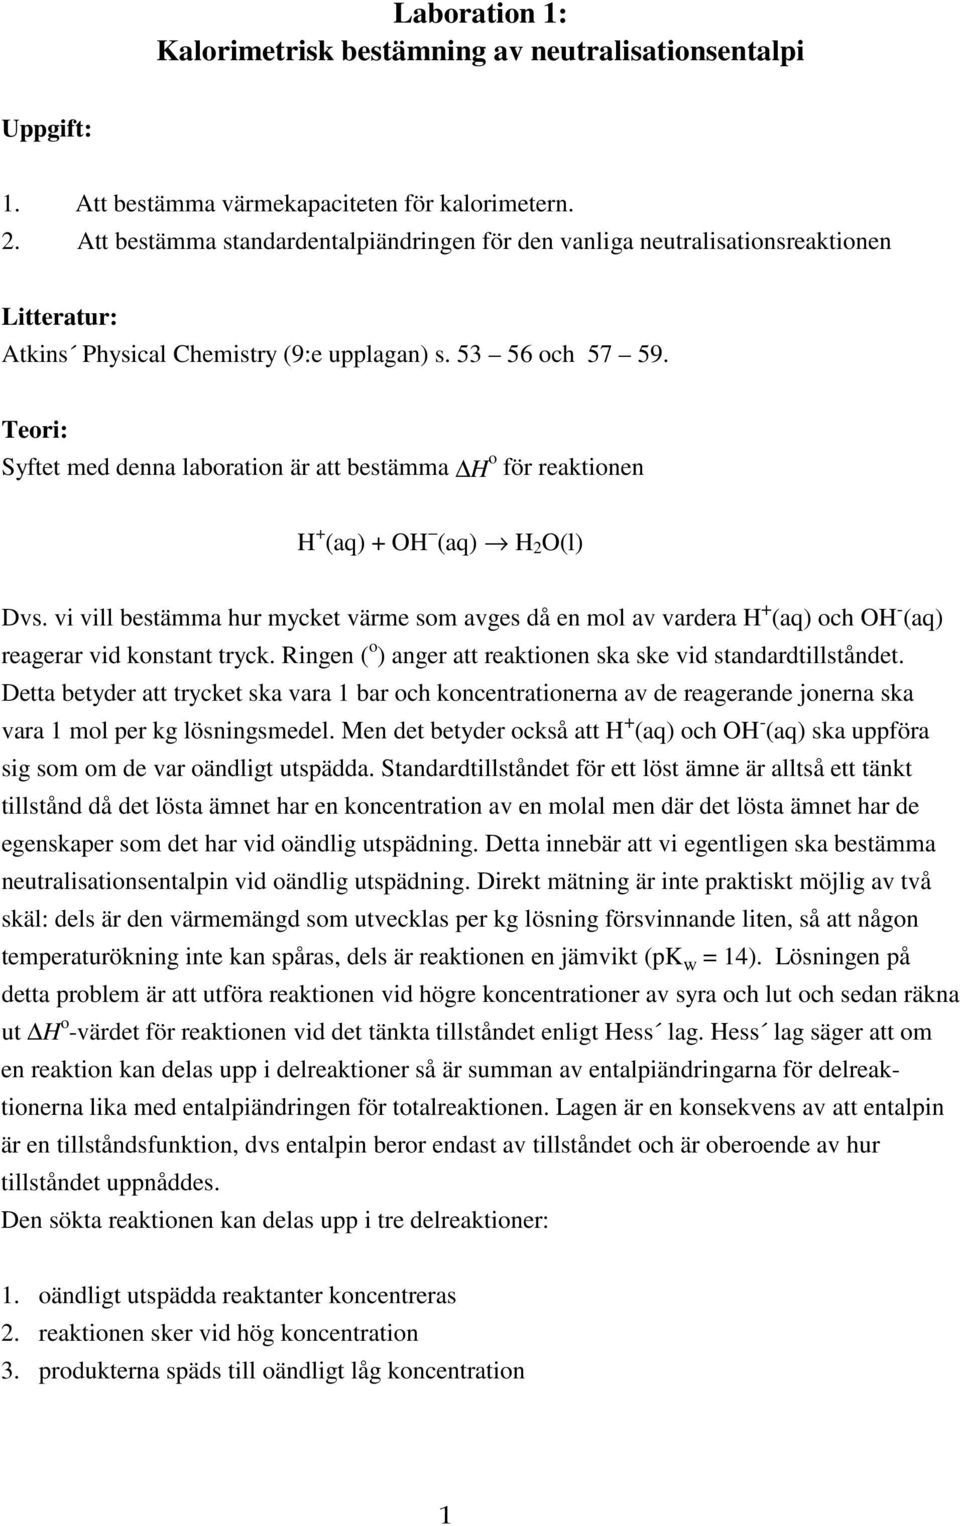 Teri: Syftet med denna labratin är att bestämma H för reaktinen H + (aq) + OH (aq) H 2 O(l) Dvs.